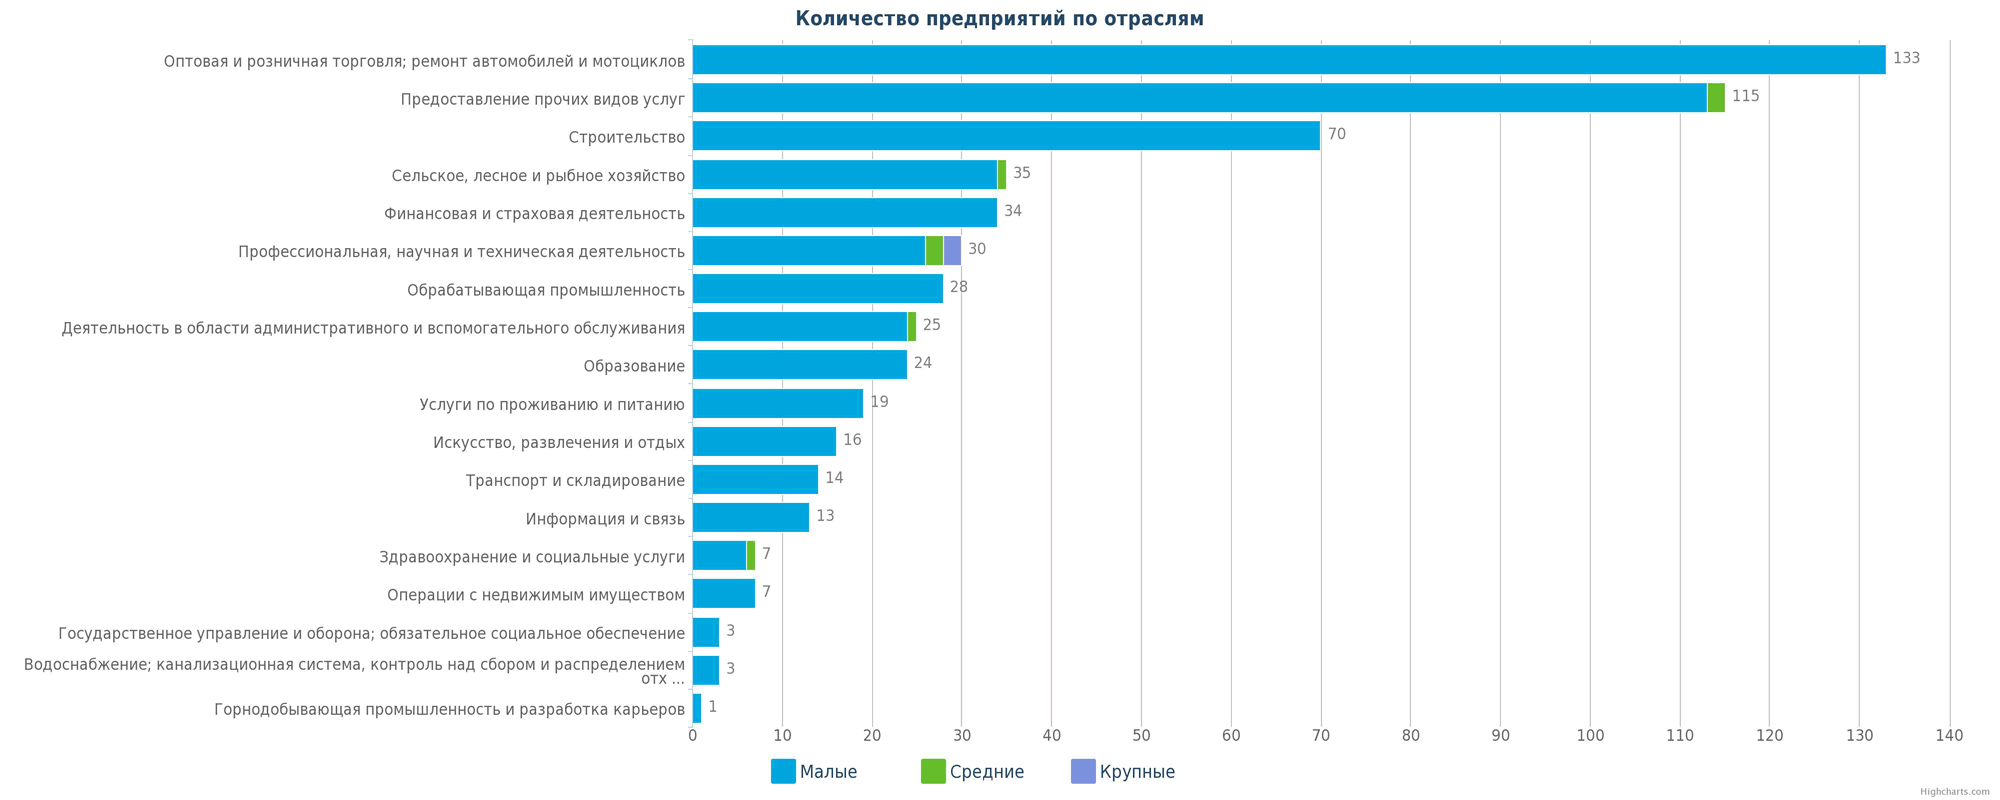 Количество новых юридических лиц в справочнике Казахстана по отраслям